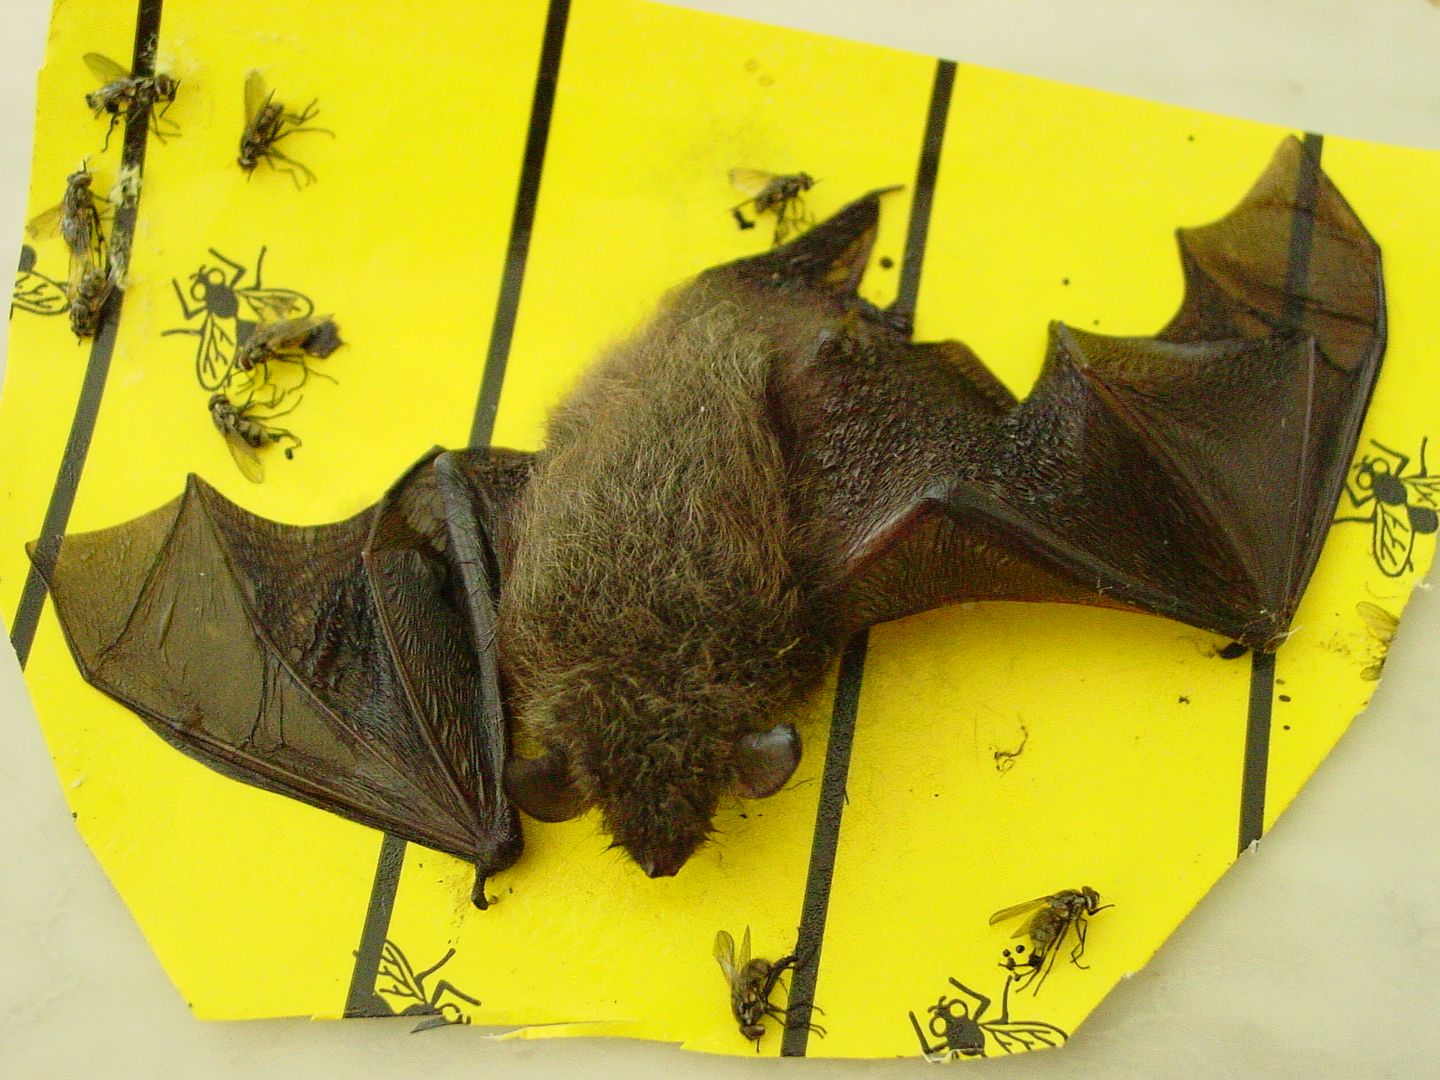 Das Foto zeigt eine Klebefalle mit einer festgeklebten Fledermaus. Das Tier konnte gerettet werden. // The photo shows a glue trap with a stuck-on bat. The animal was saved.